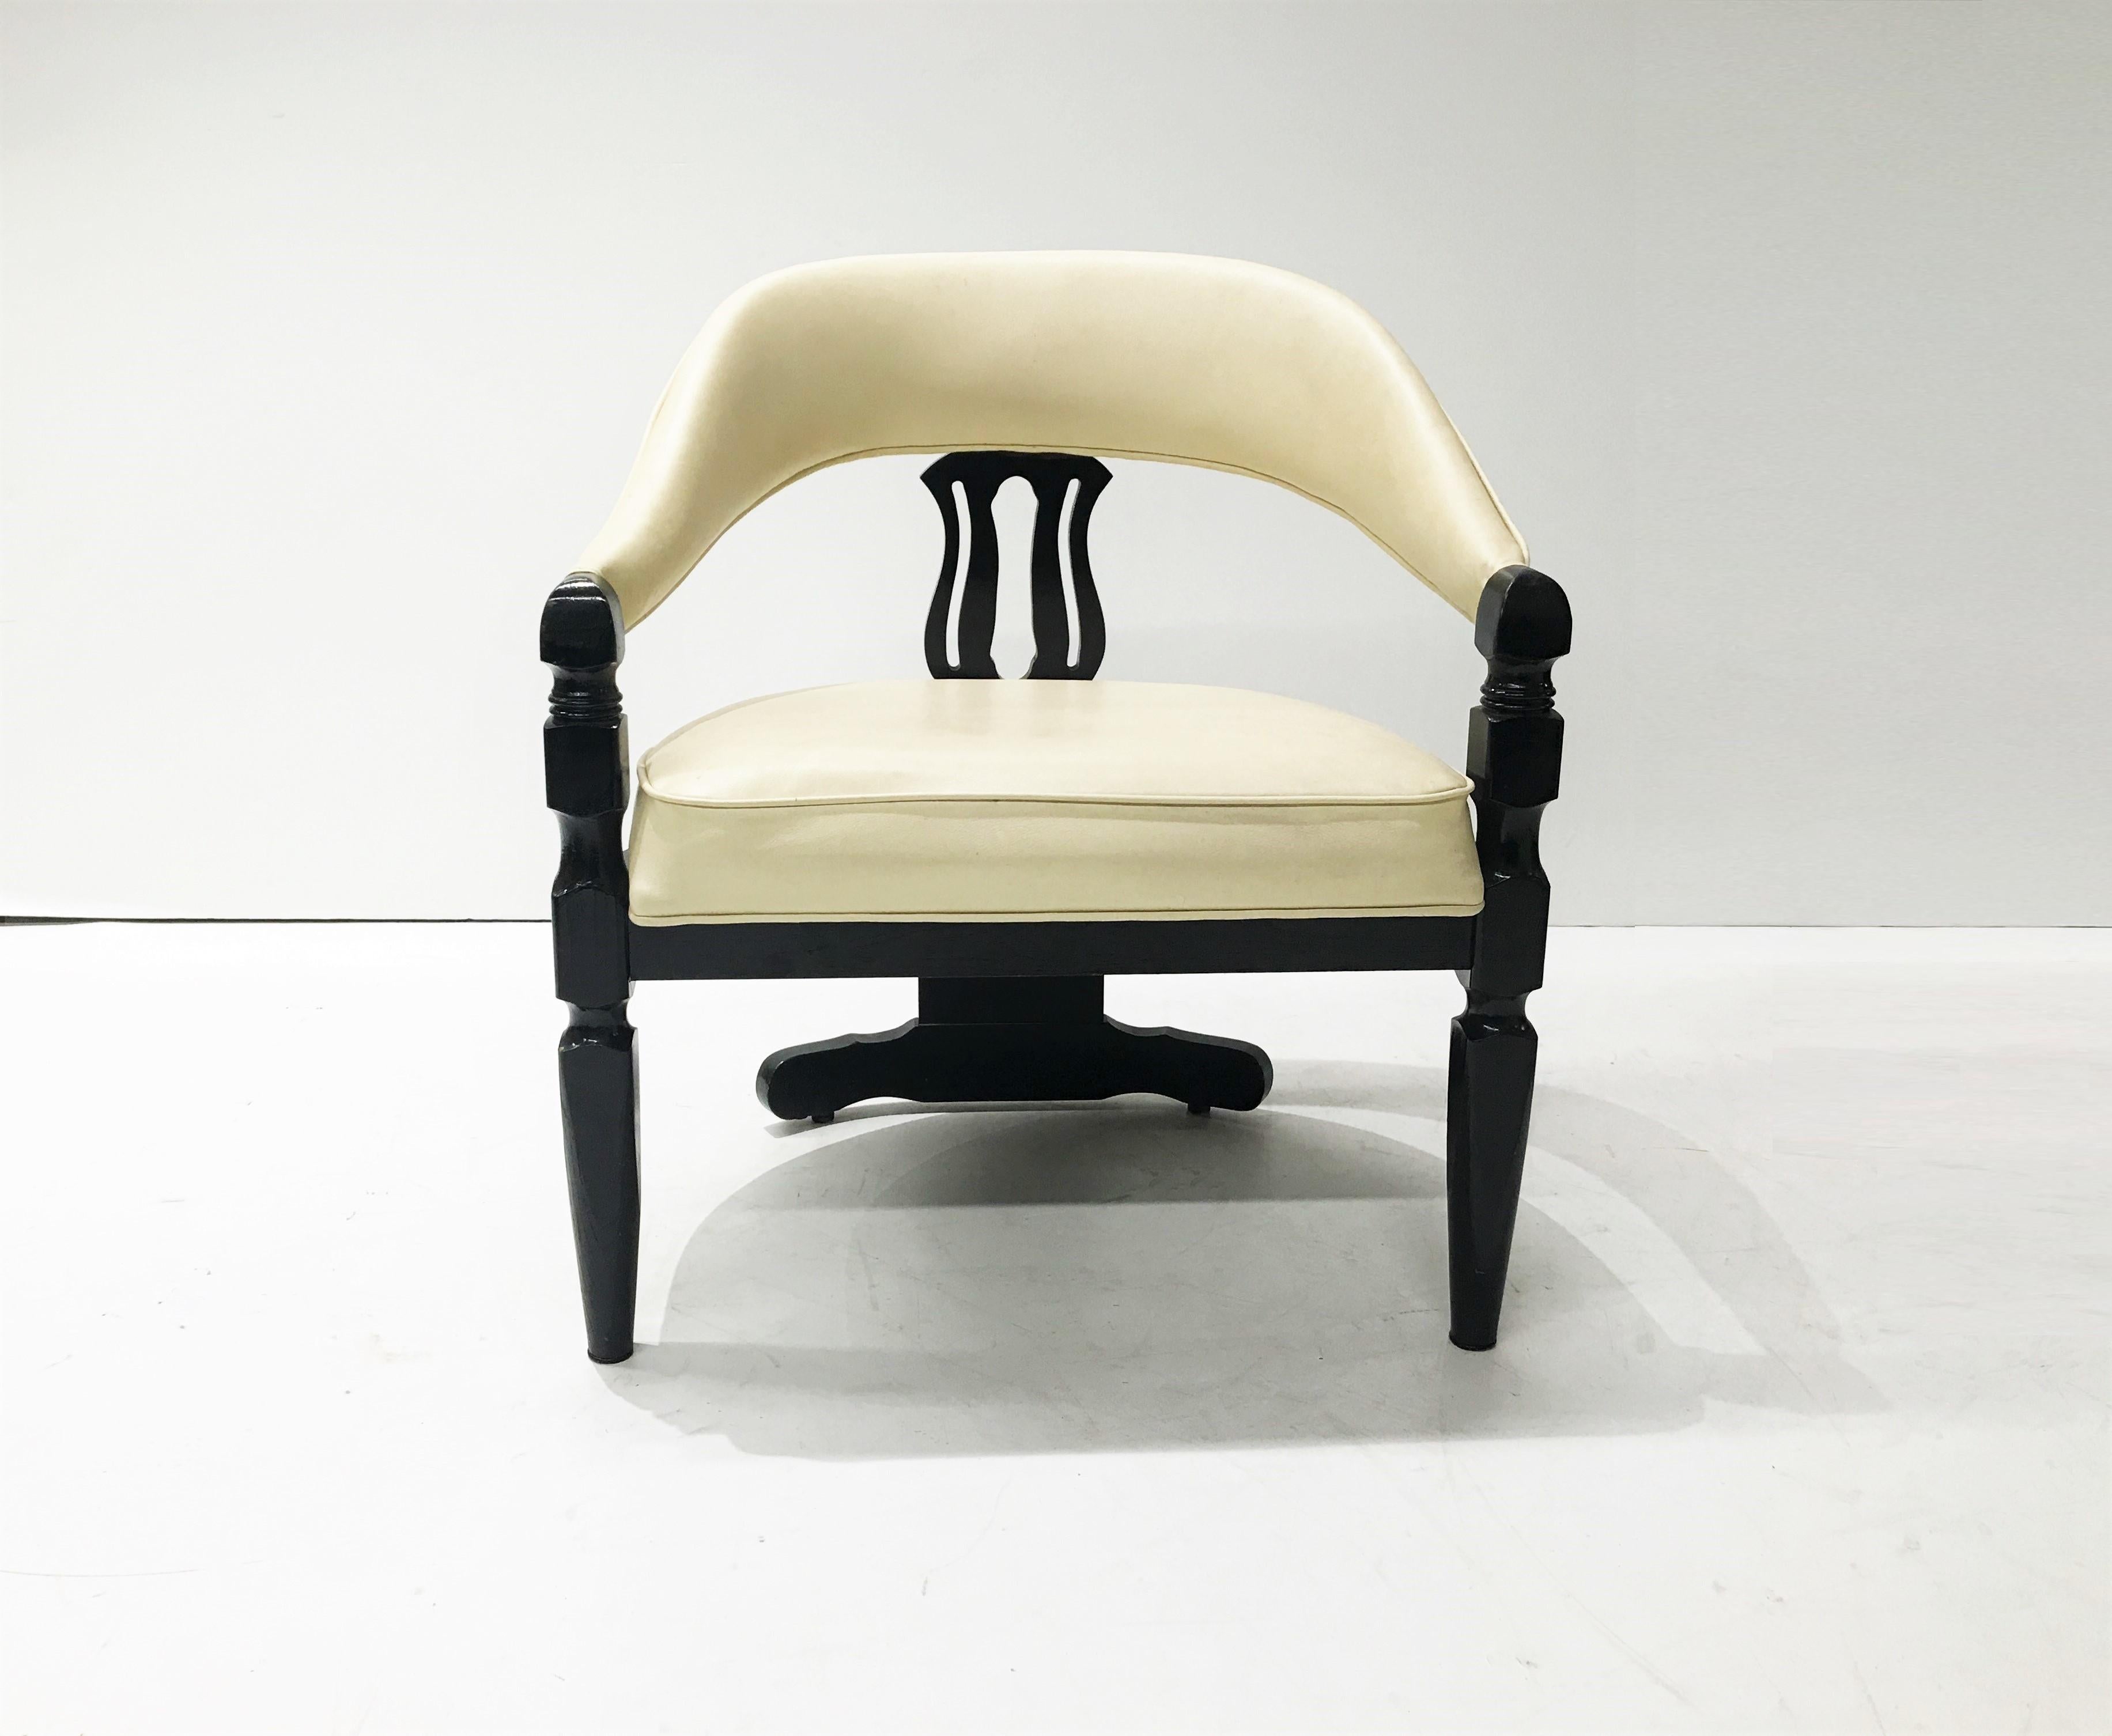 Quatre fauteuils à trois pieds d'inspiration chinoise, datant du milieu du siècle dernier. Les fauteuils à profil bas ont une structure en bois avec une finition noire foncée et sont recouverts de vinyle blanc cassé. La forme rembourrée est